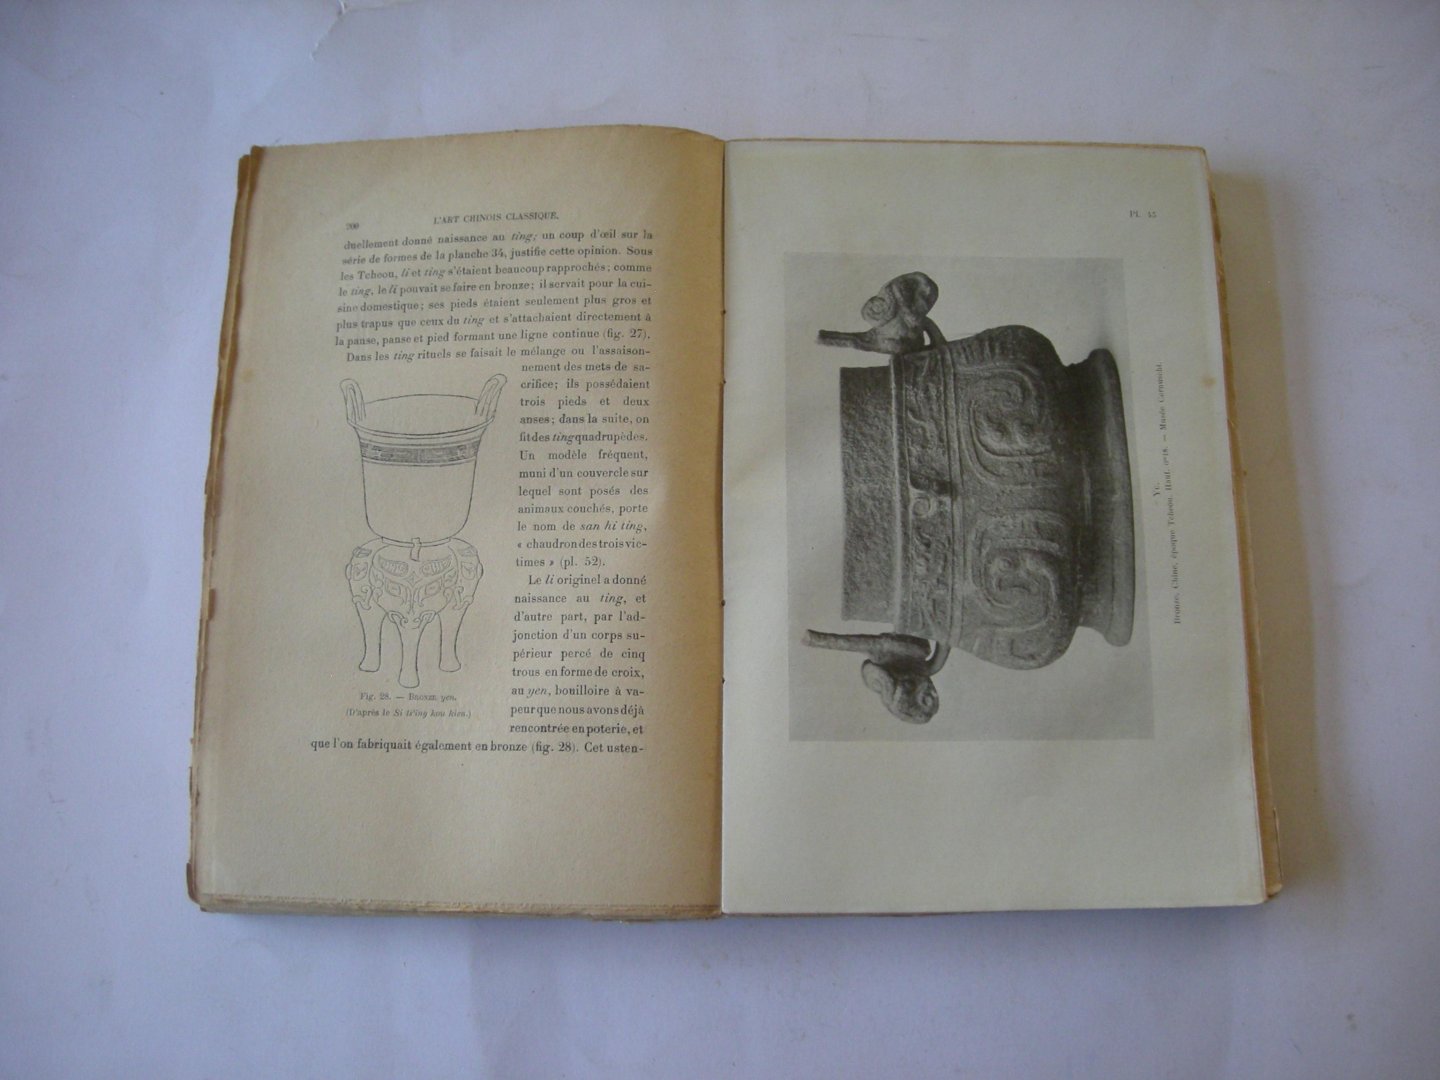 d'Ardenne de Tizac, H. - L'Art Chinois Classique. Oeuvrage illustre de 30 gravures dans le texte et 162 gravures hors texte